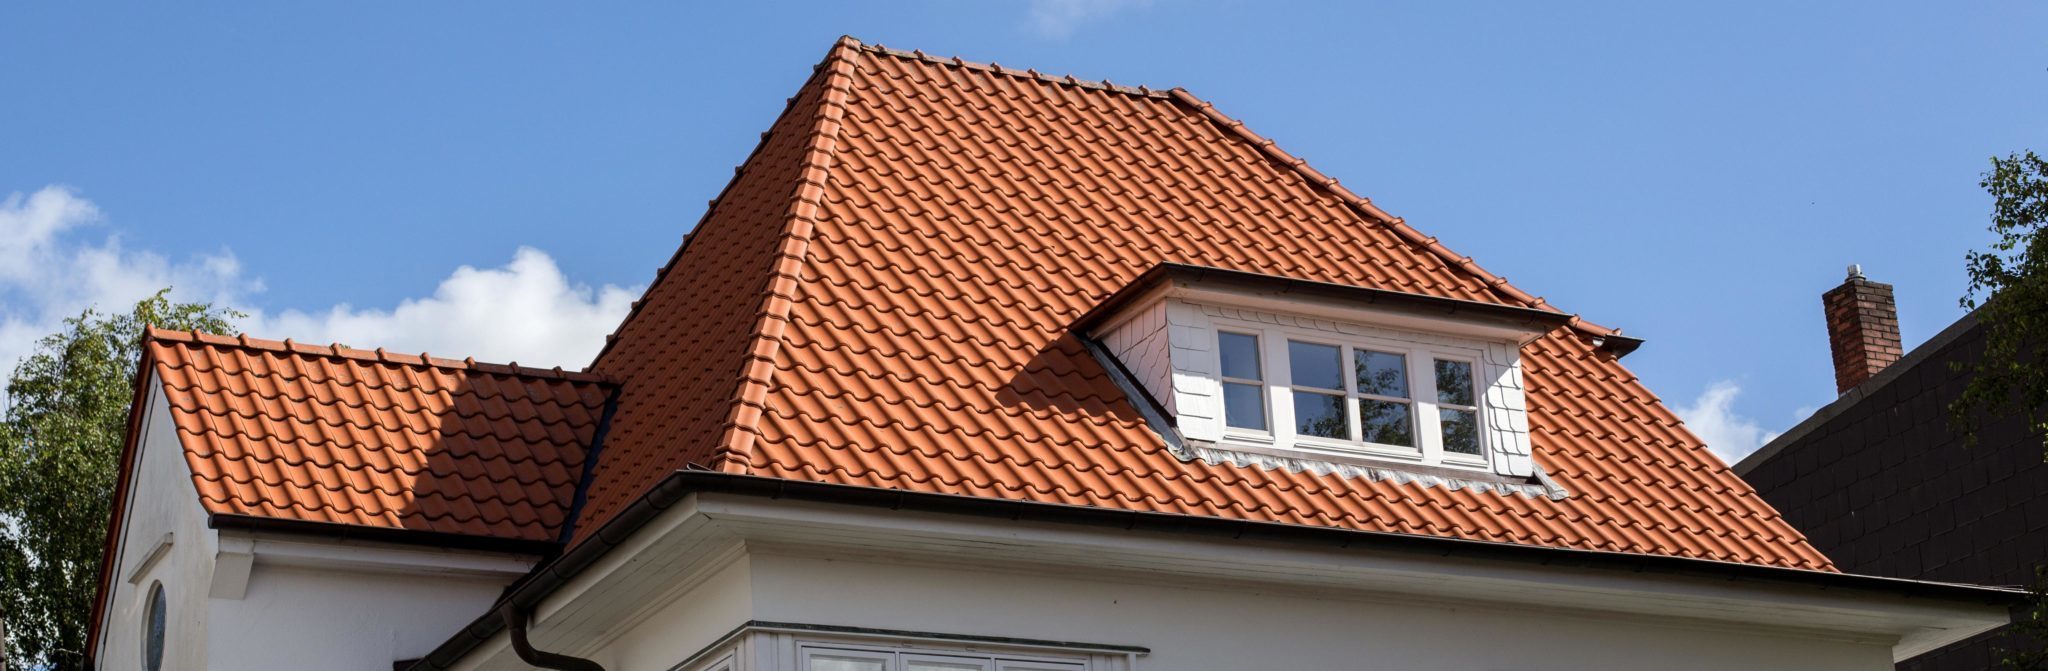 techo con tejas curvas de terracota y arcilla